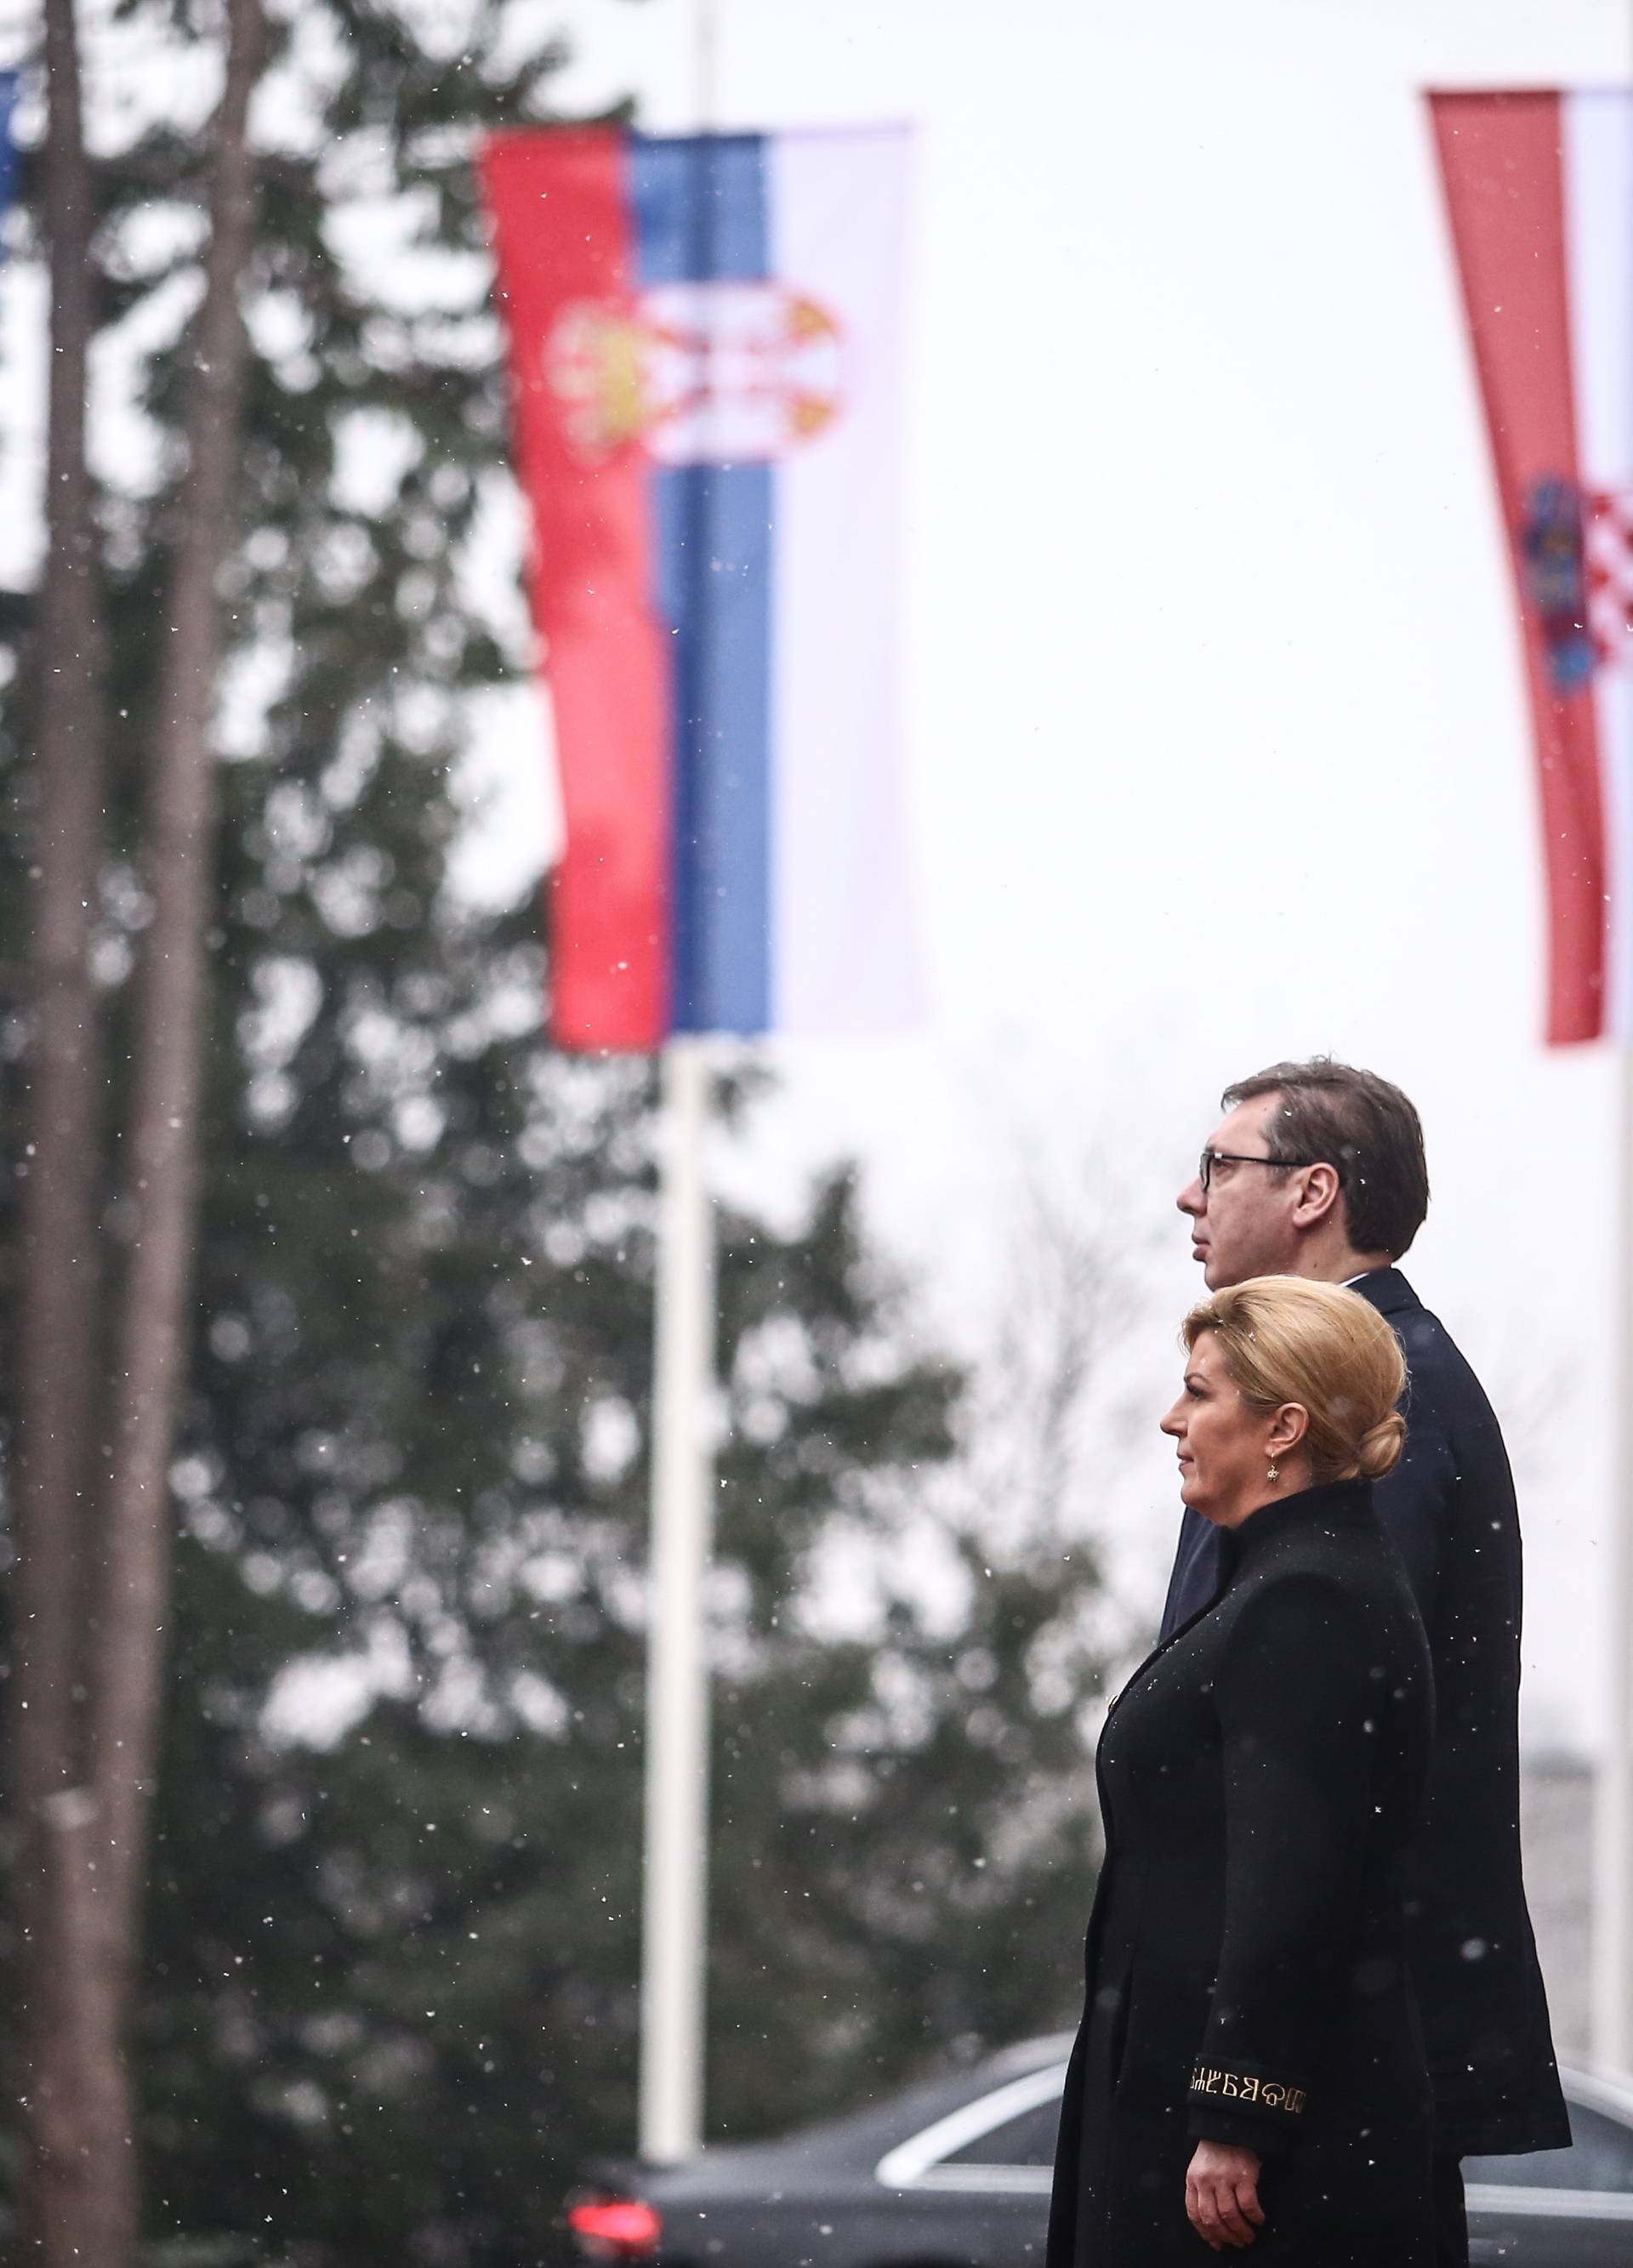 'S Vučićem sam razgovarao o suradnji, odšteti, nestalima...'